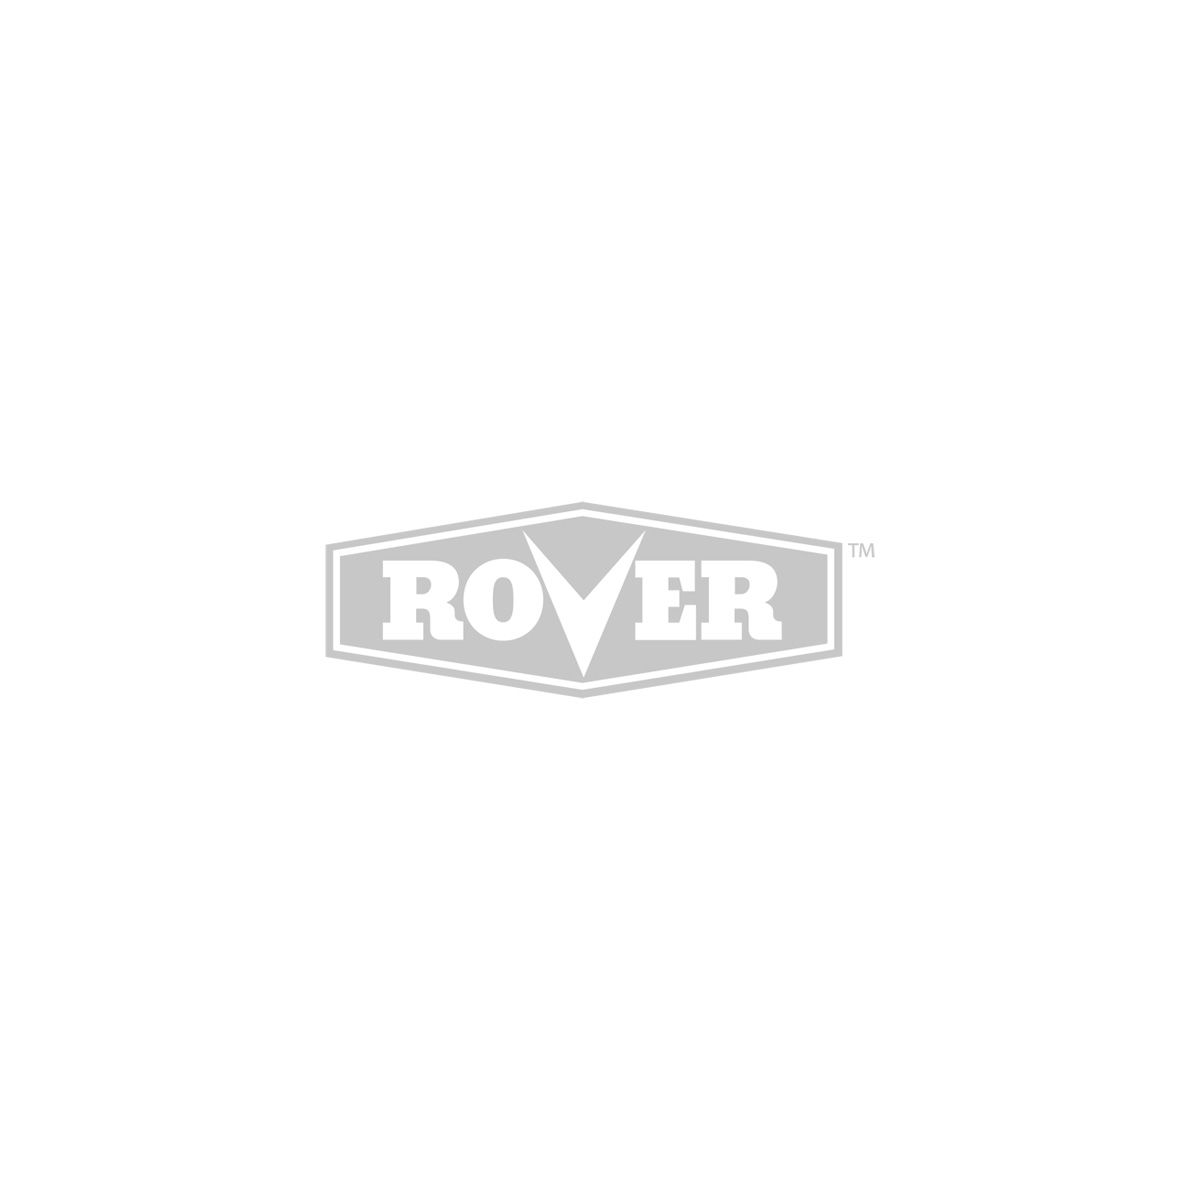 Rover Pre-Air Filter